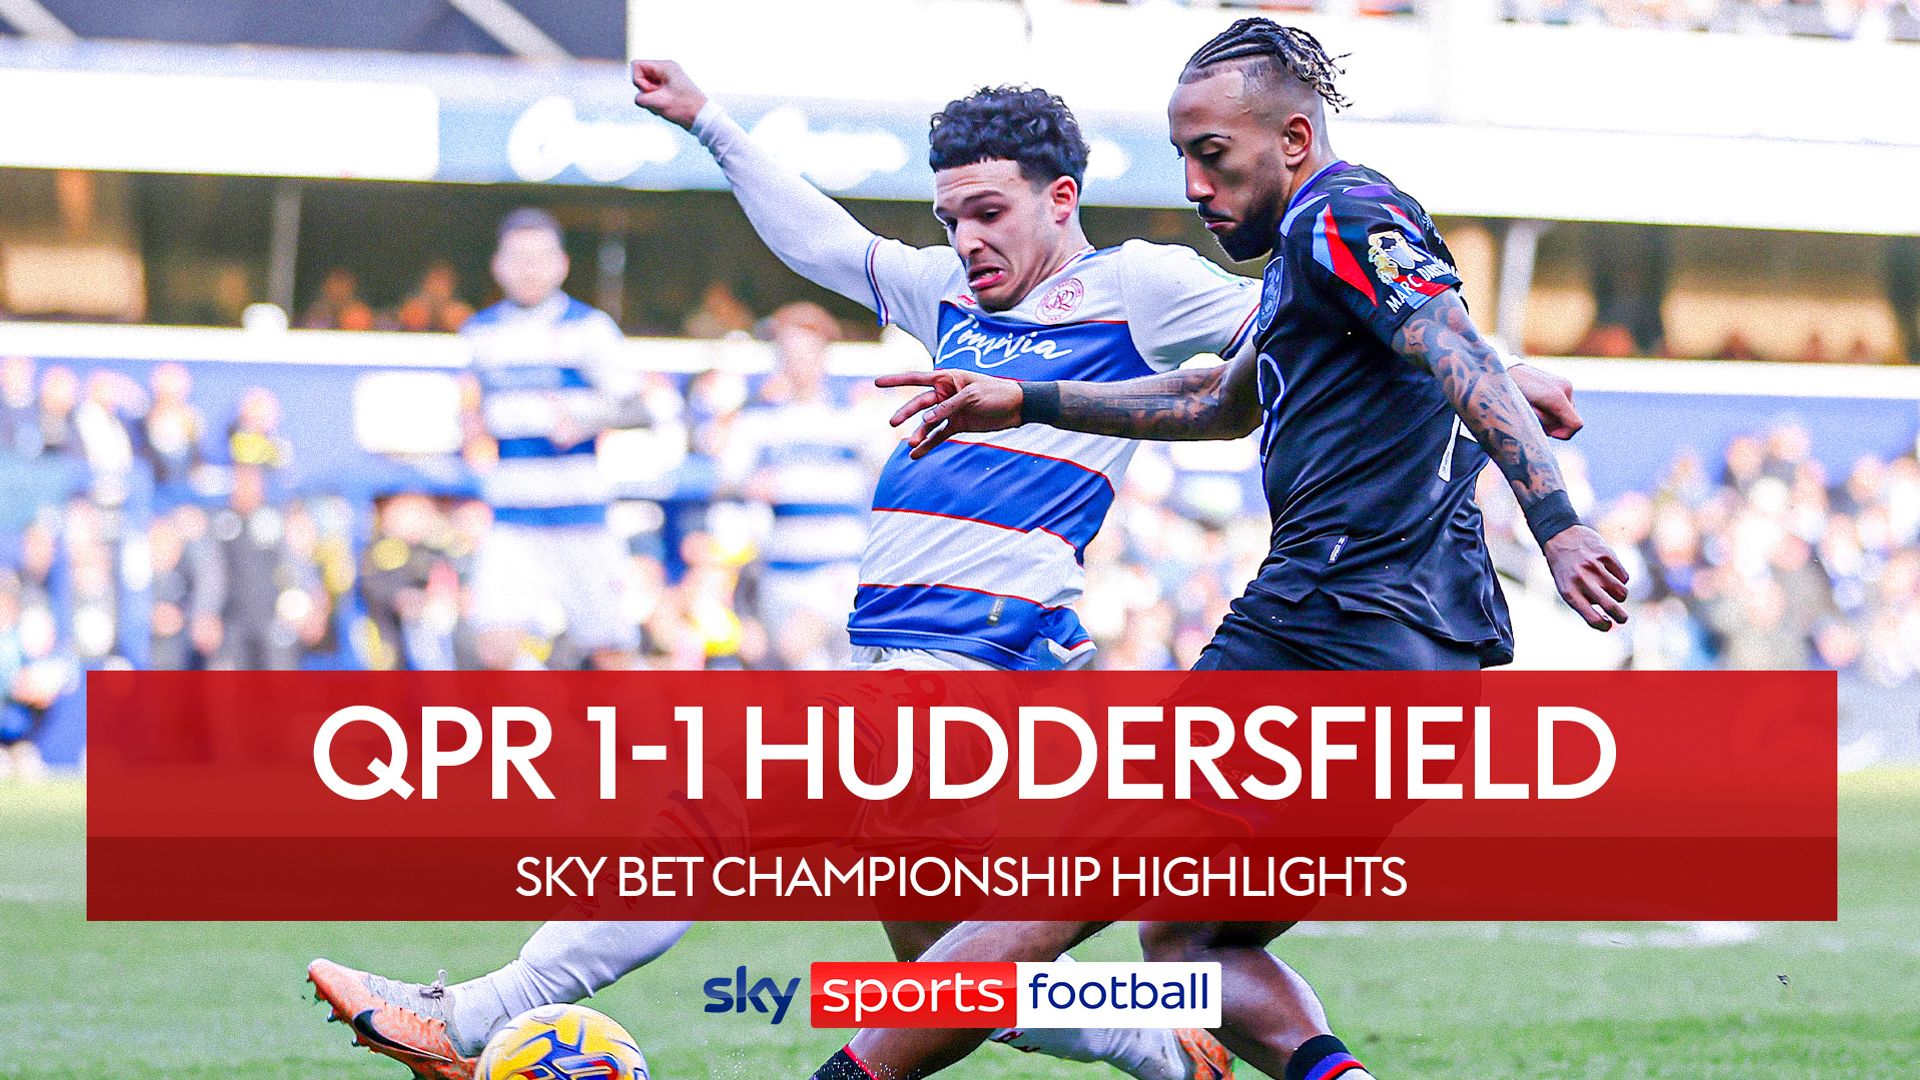 QPR 1-1 Huddersfield